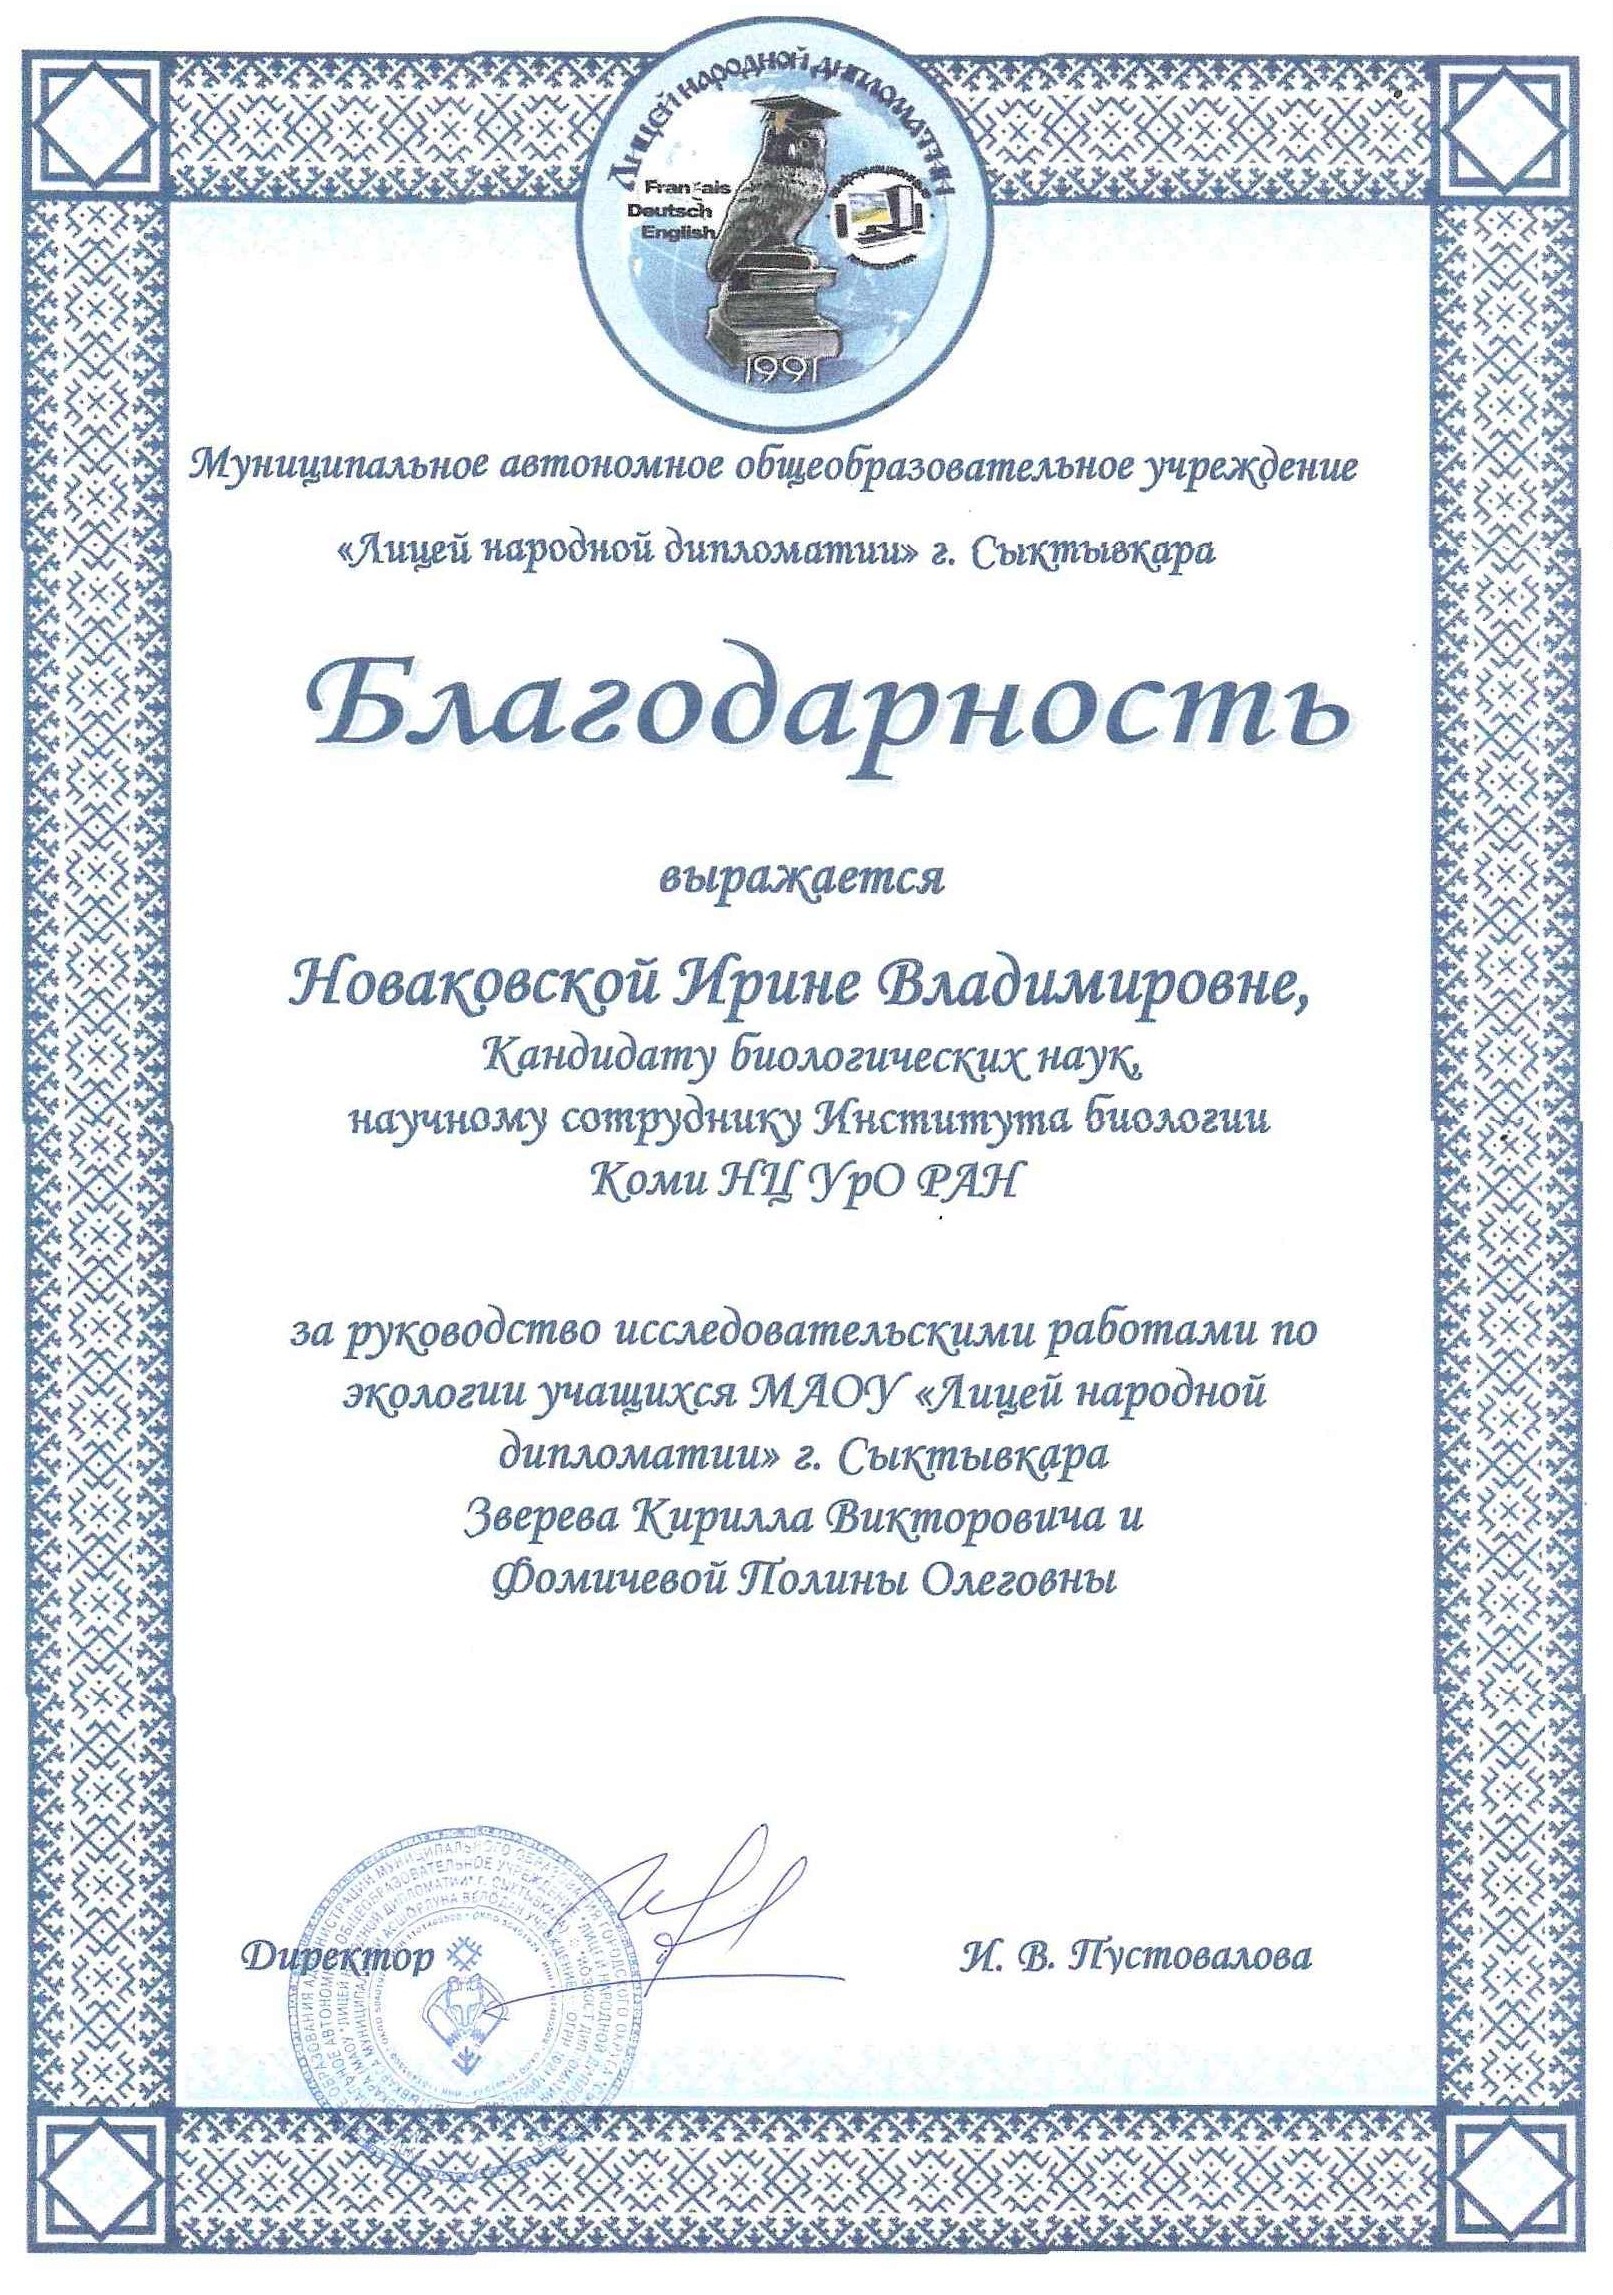 Благодарность Ирине Владимировне Новаковской от Лицея народной дипломатии г. Сыктывкара